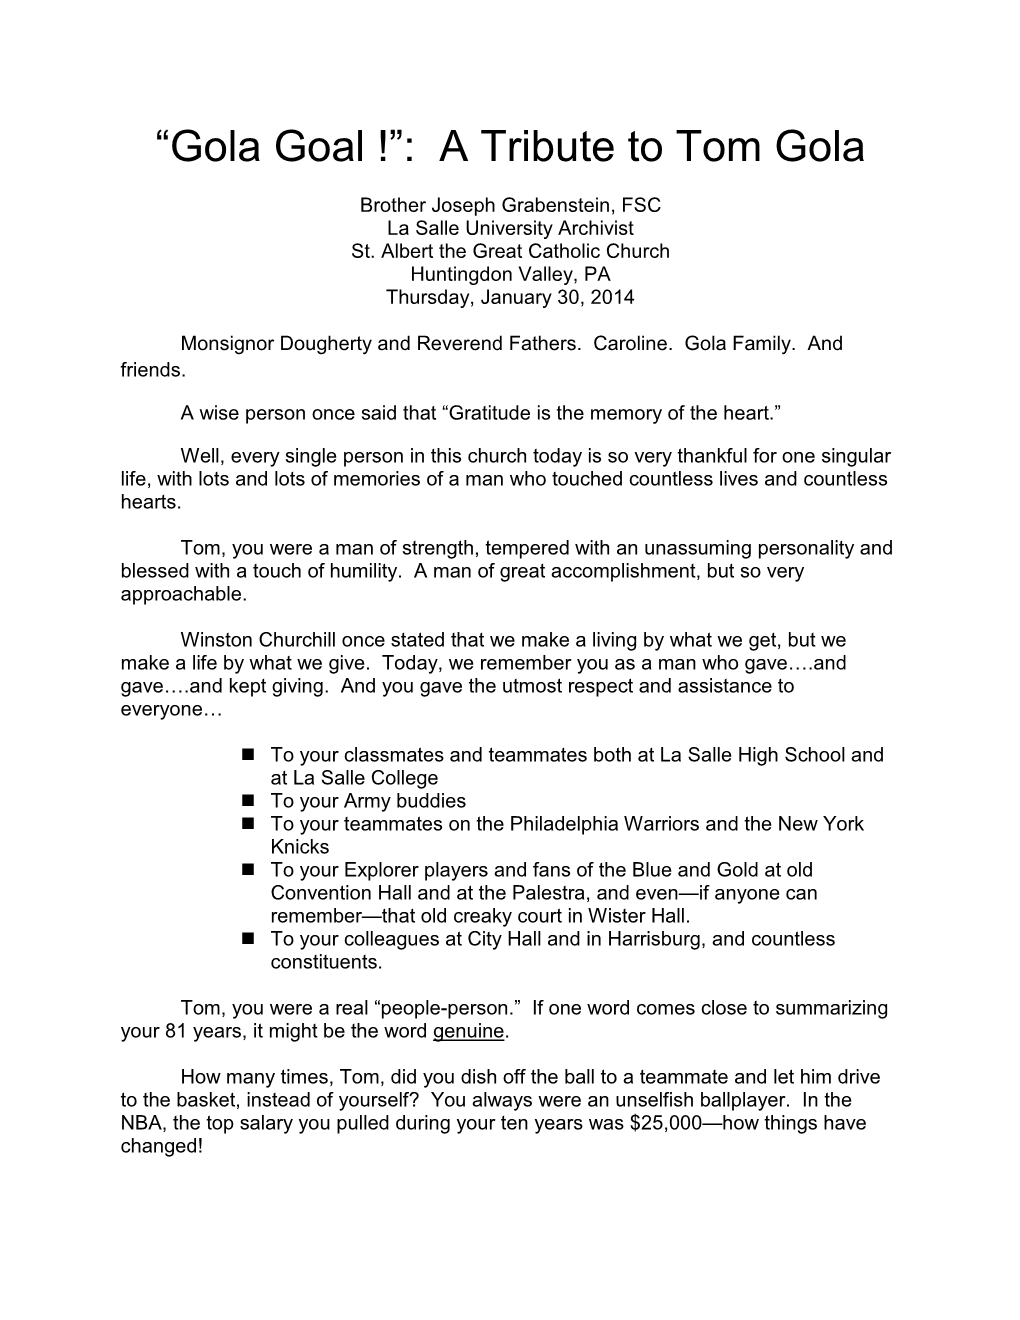 “Gola Goal !”: a Tribute to Tom Gola